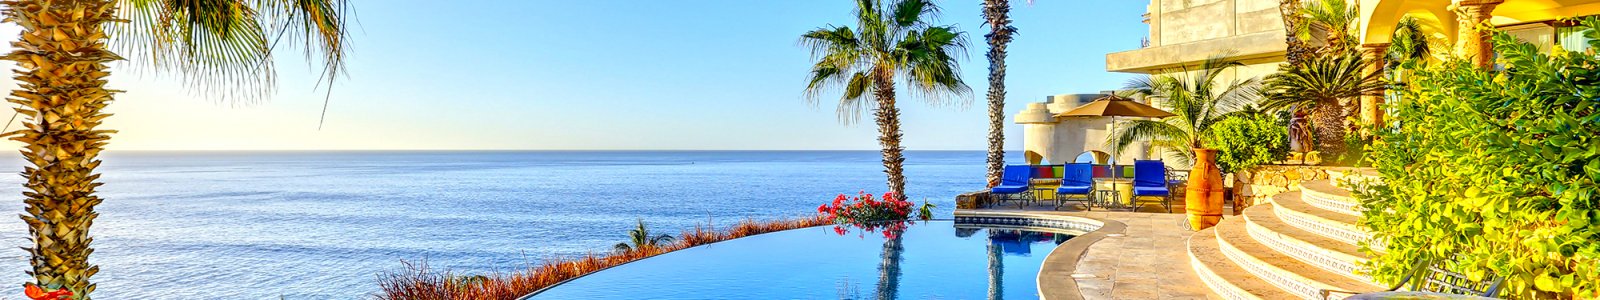 San Jose del Cabo Villas | Luxury Vacation Homes for Rent